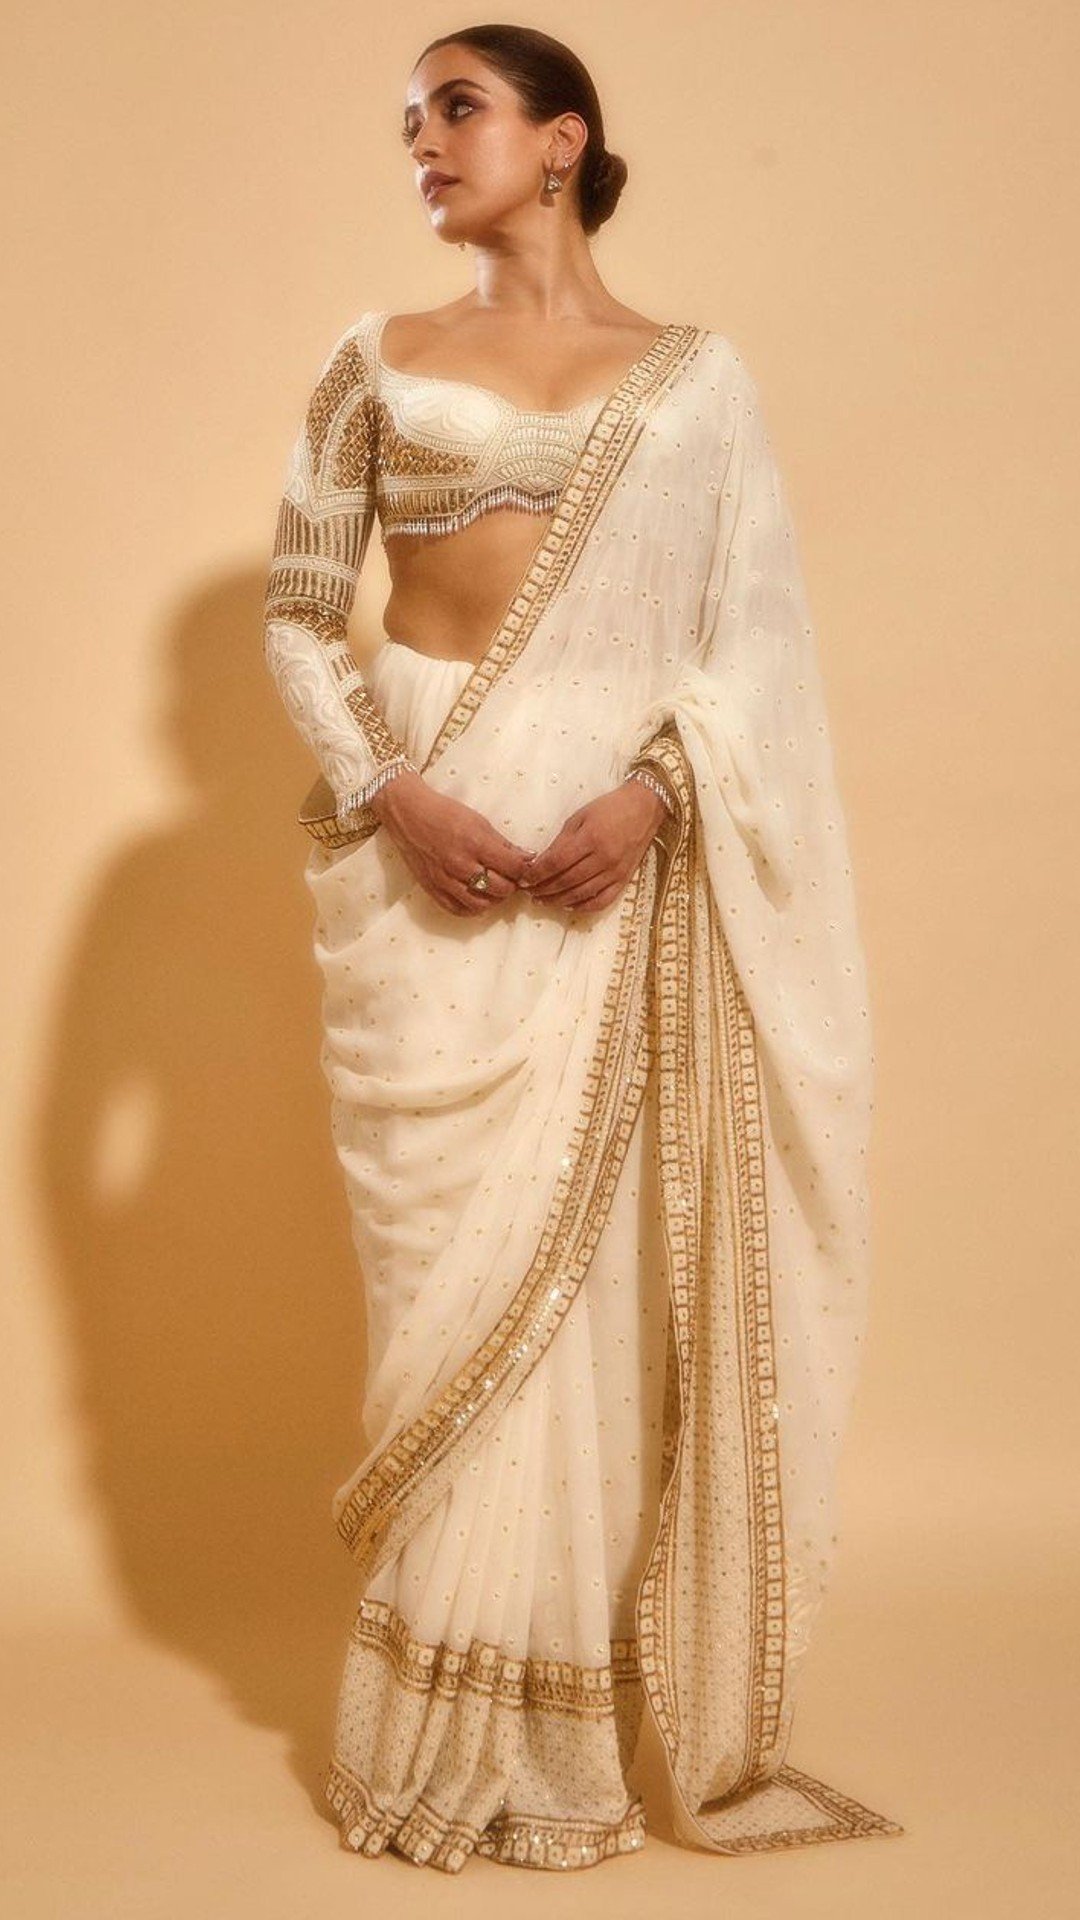 Sanya Malhotra Radiates Beauty In An Ivory Saree